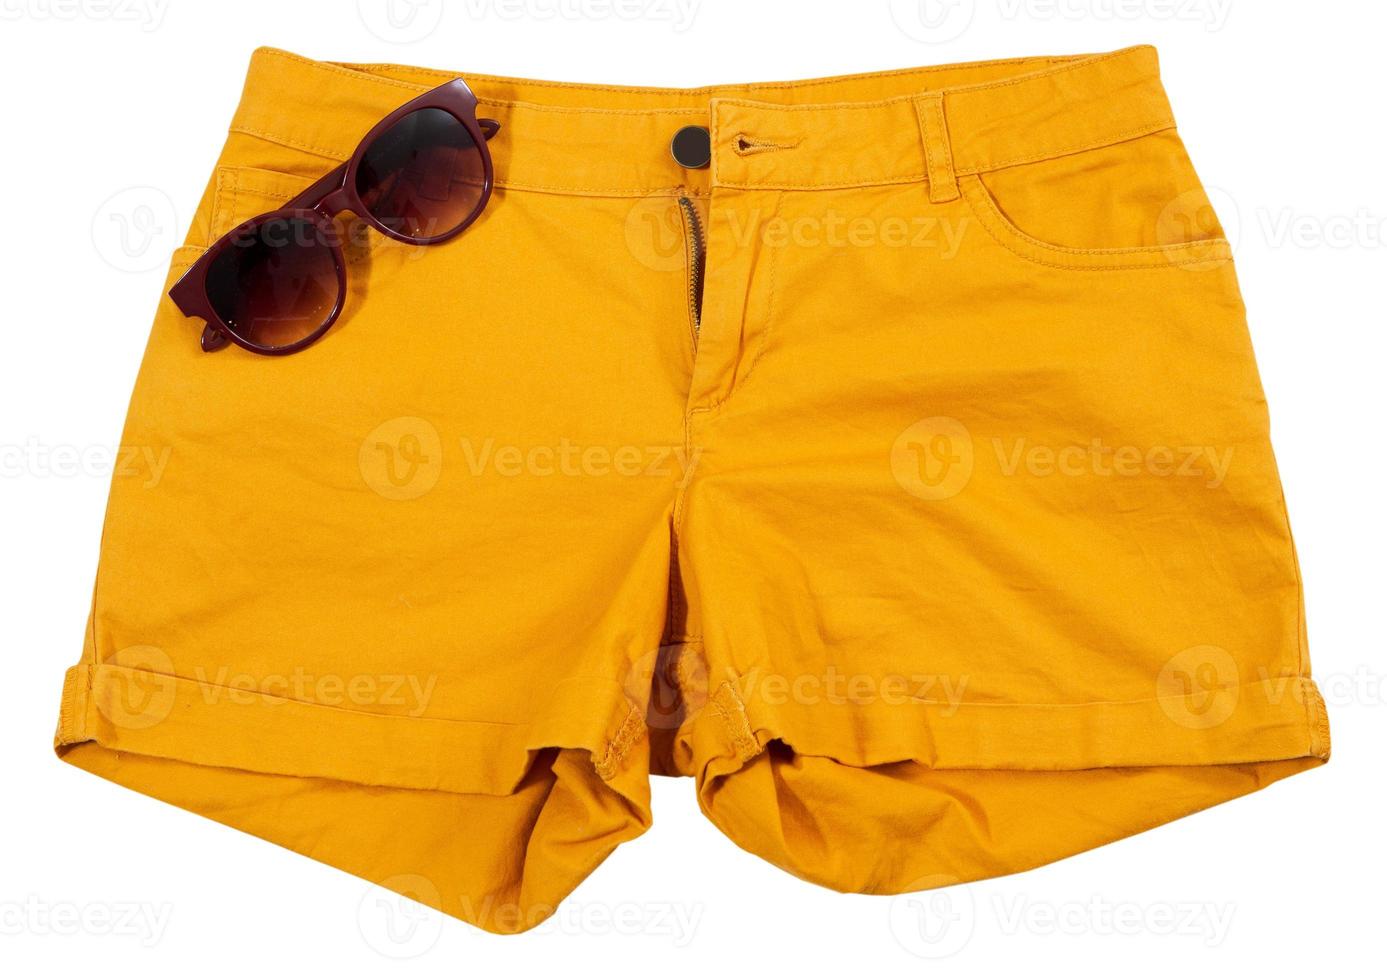 oranje korte broek en zonnebril geïsoleerd op een witte achtergrond foto